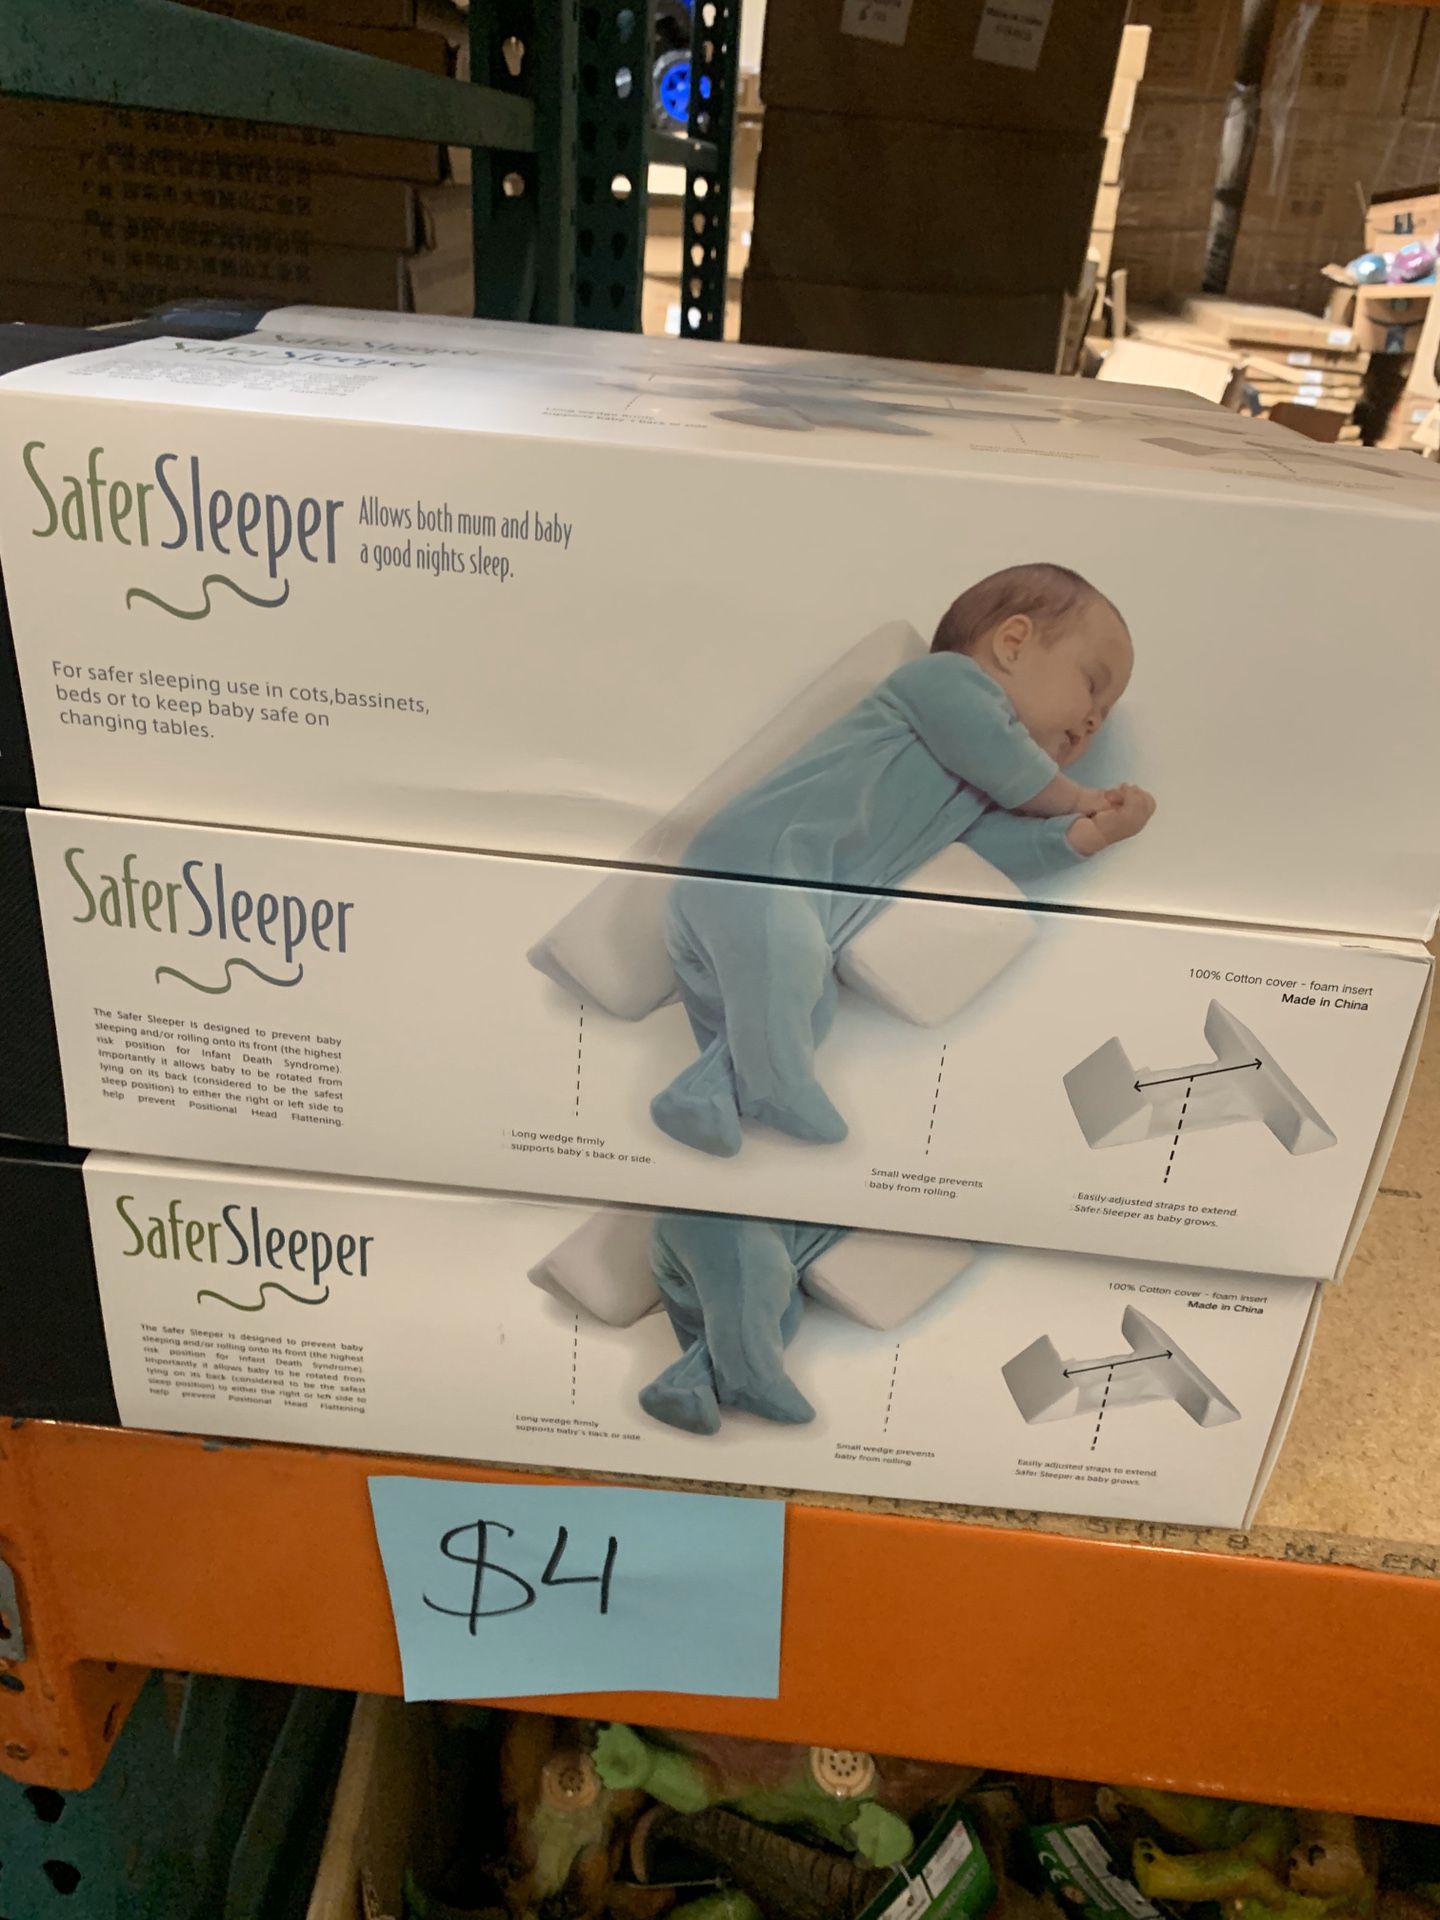 Safer Sleeper